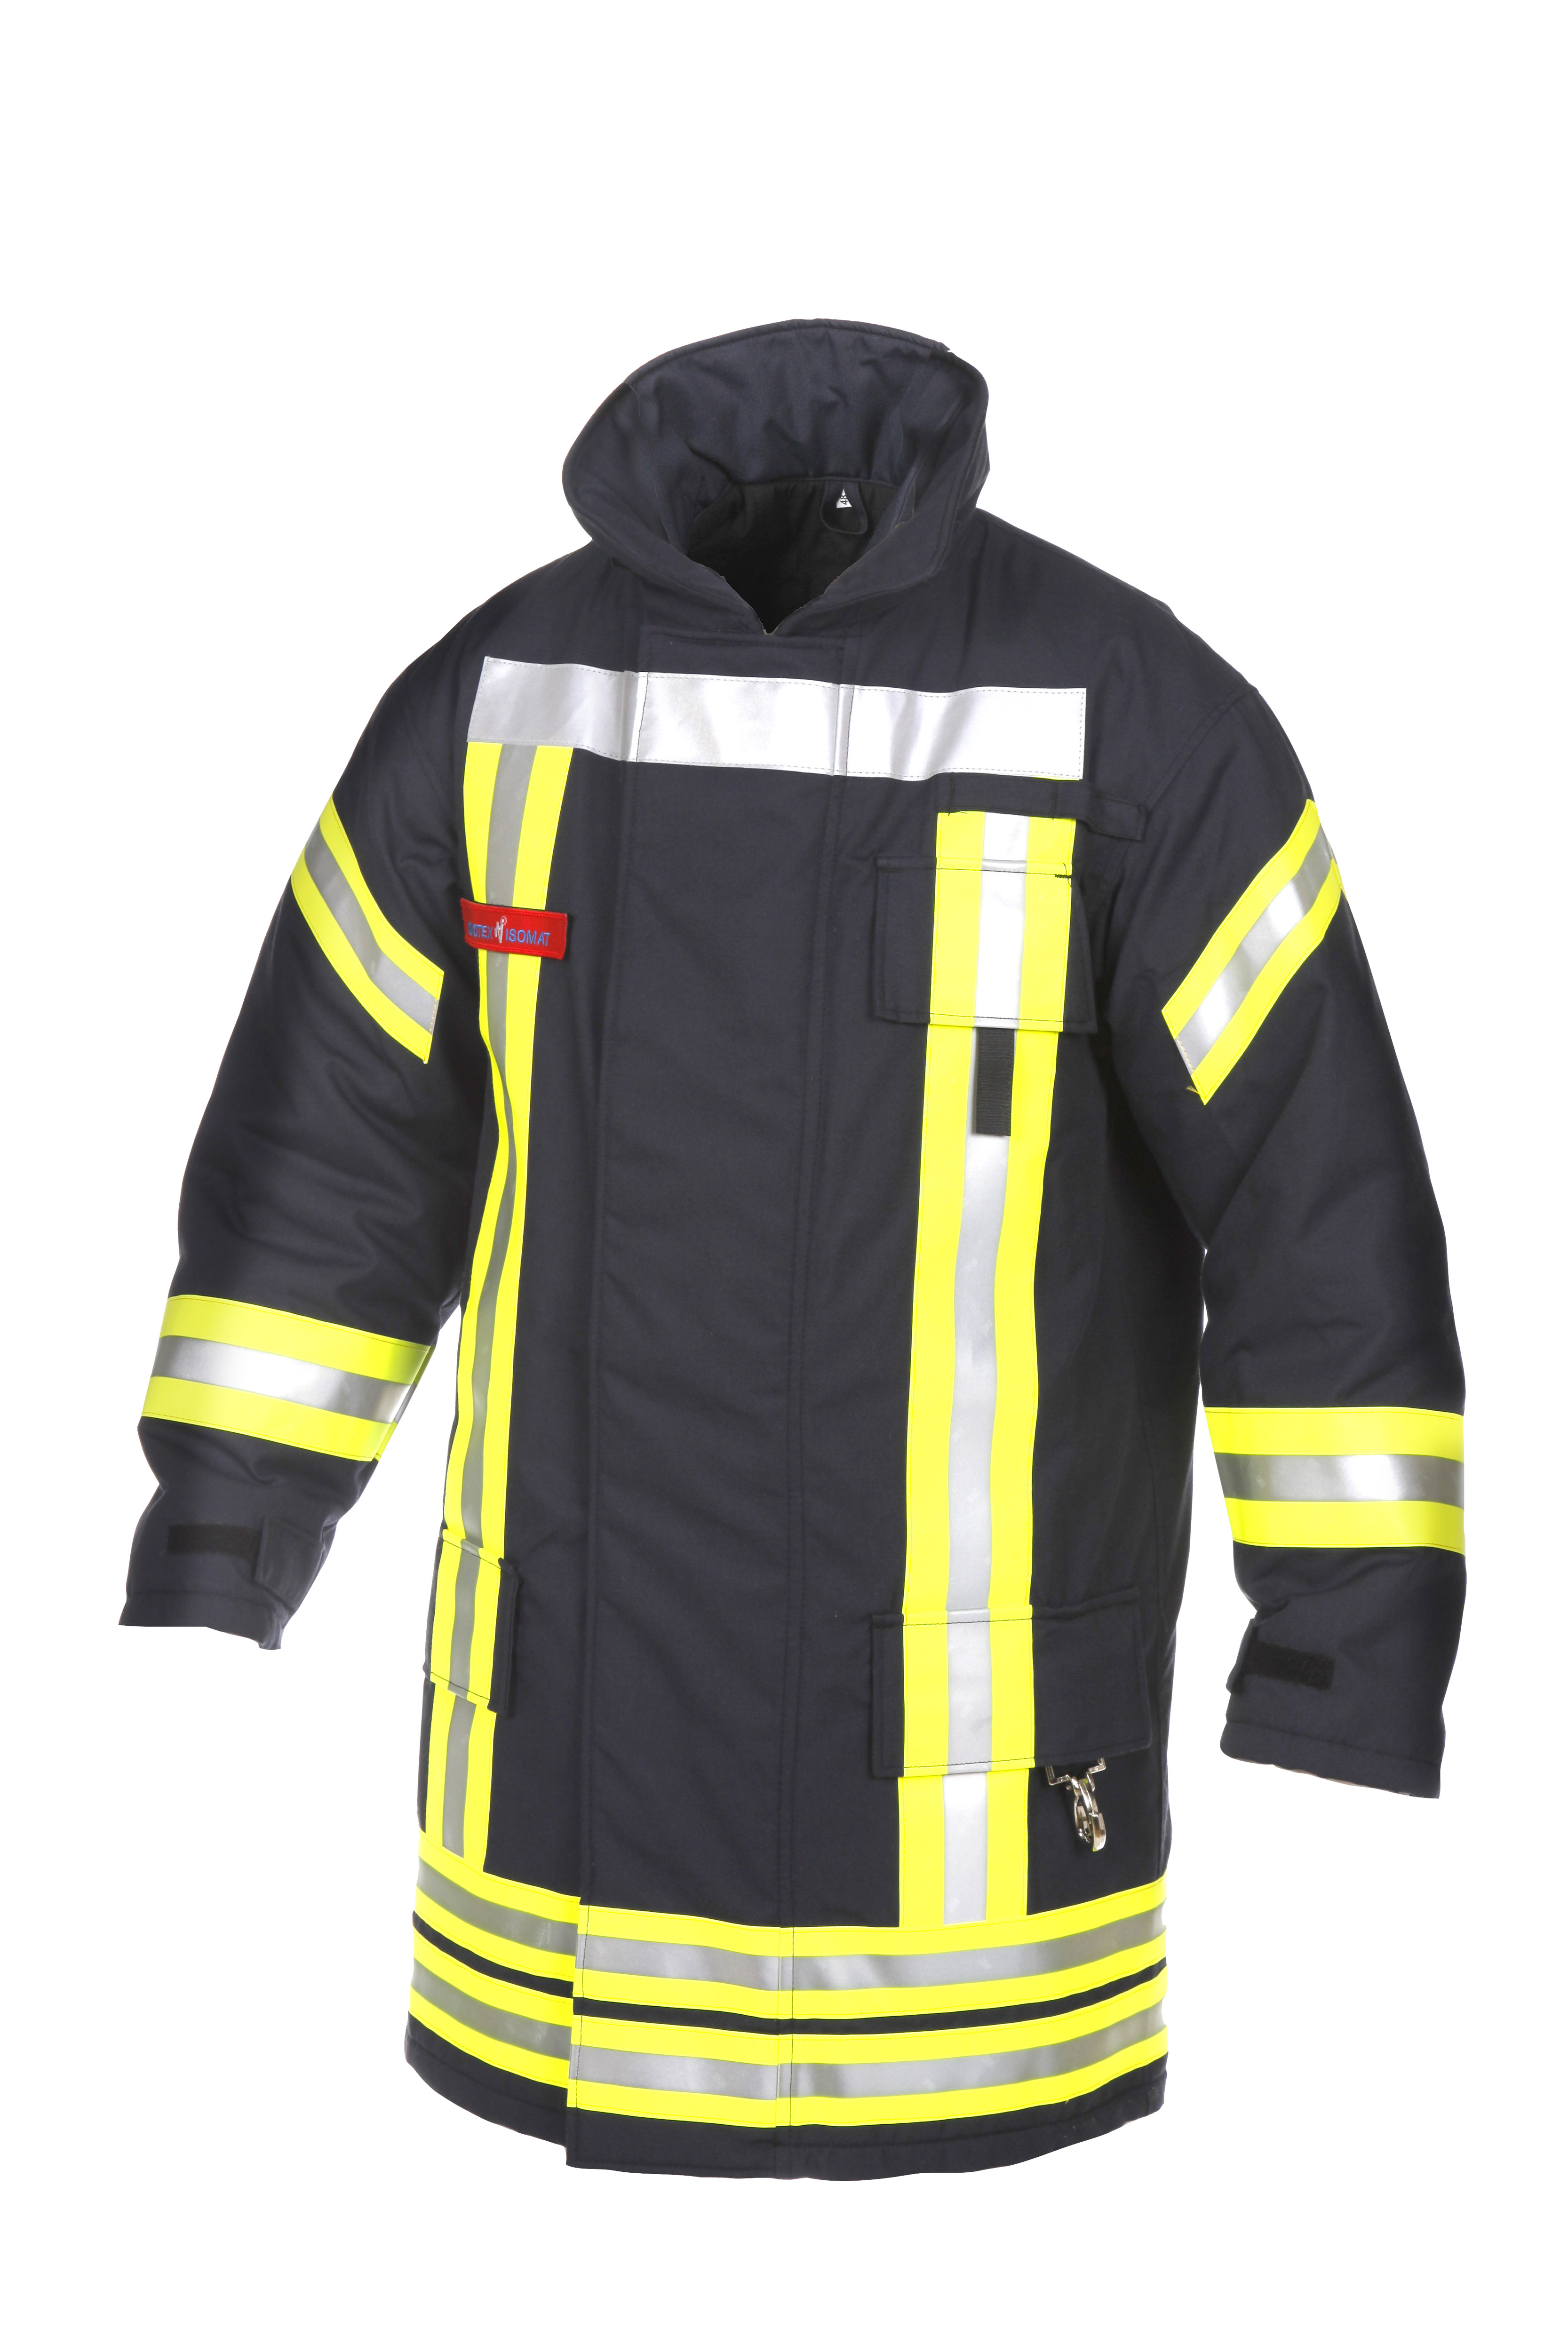 Novotex Feuerwehr-Überjacke Nomex/Airtex® HuPF Teil 1, schwarzblau